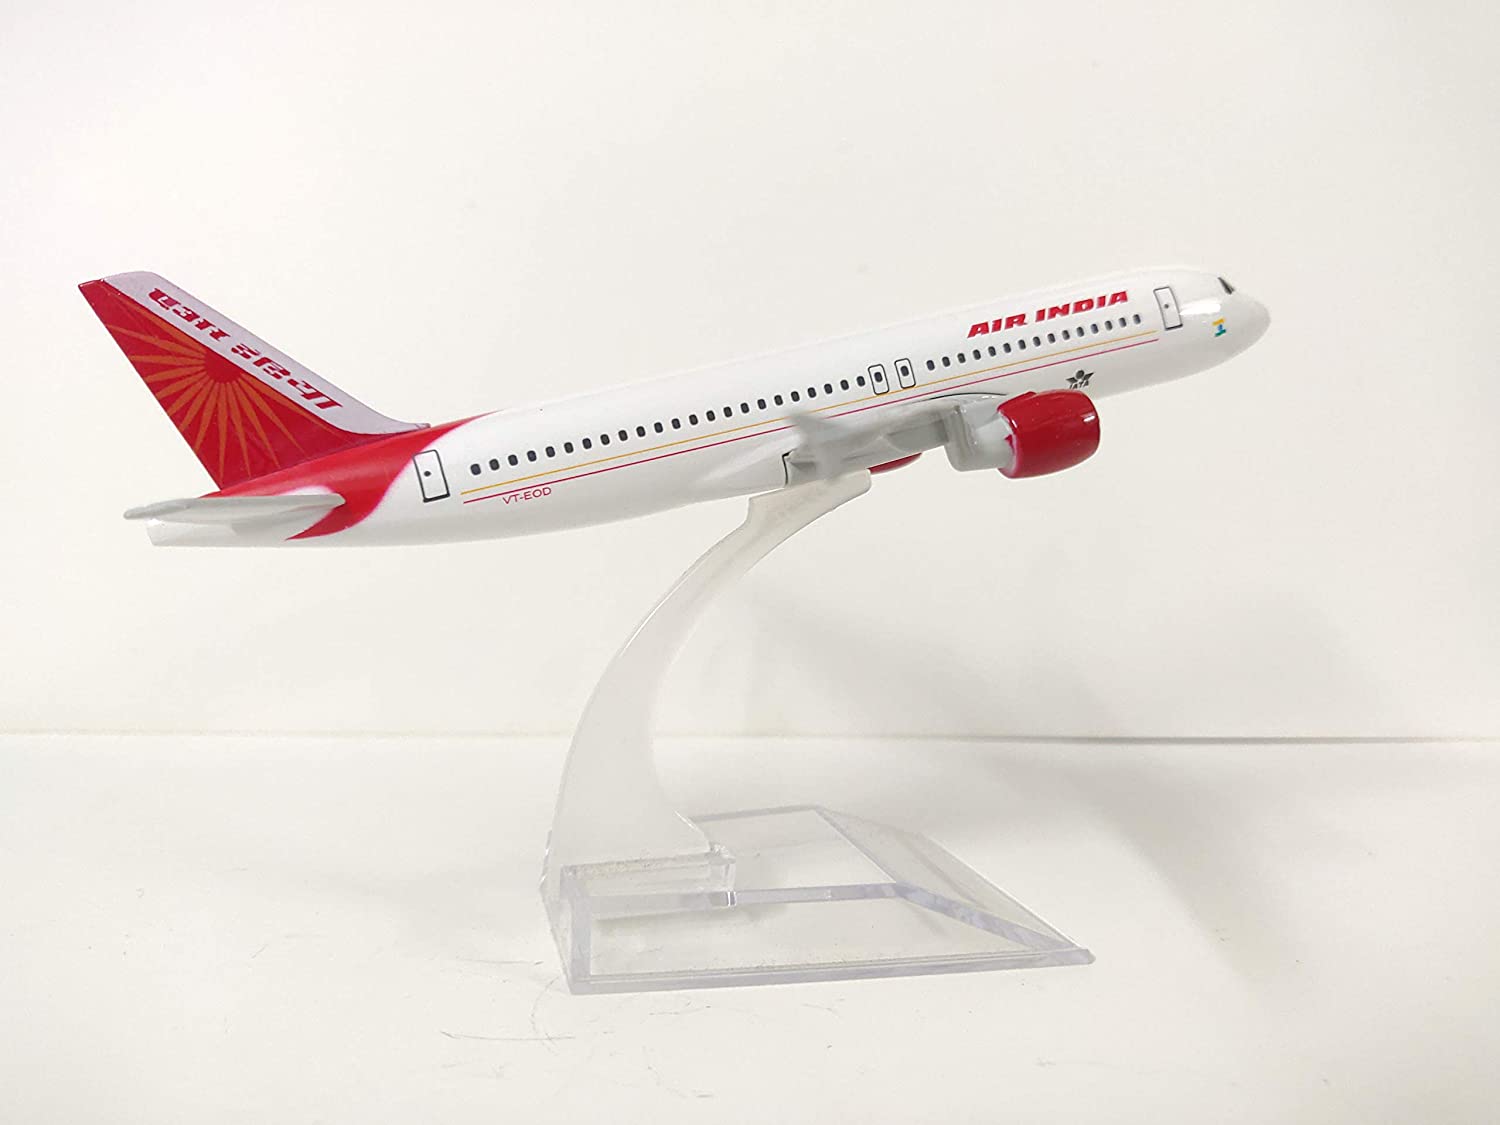 Airplane Diecast Air India A320 16Cm